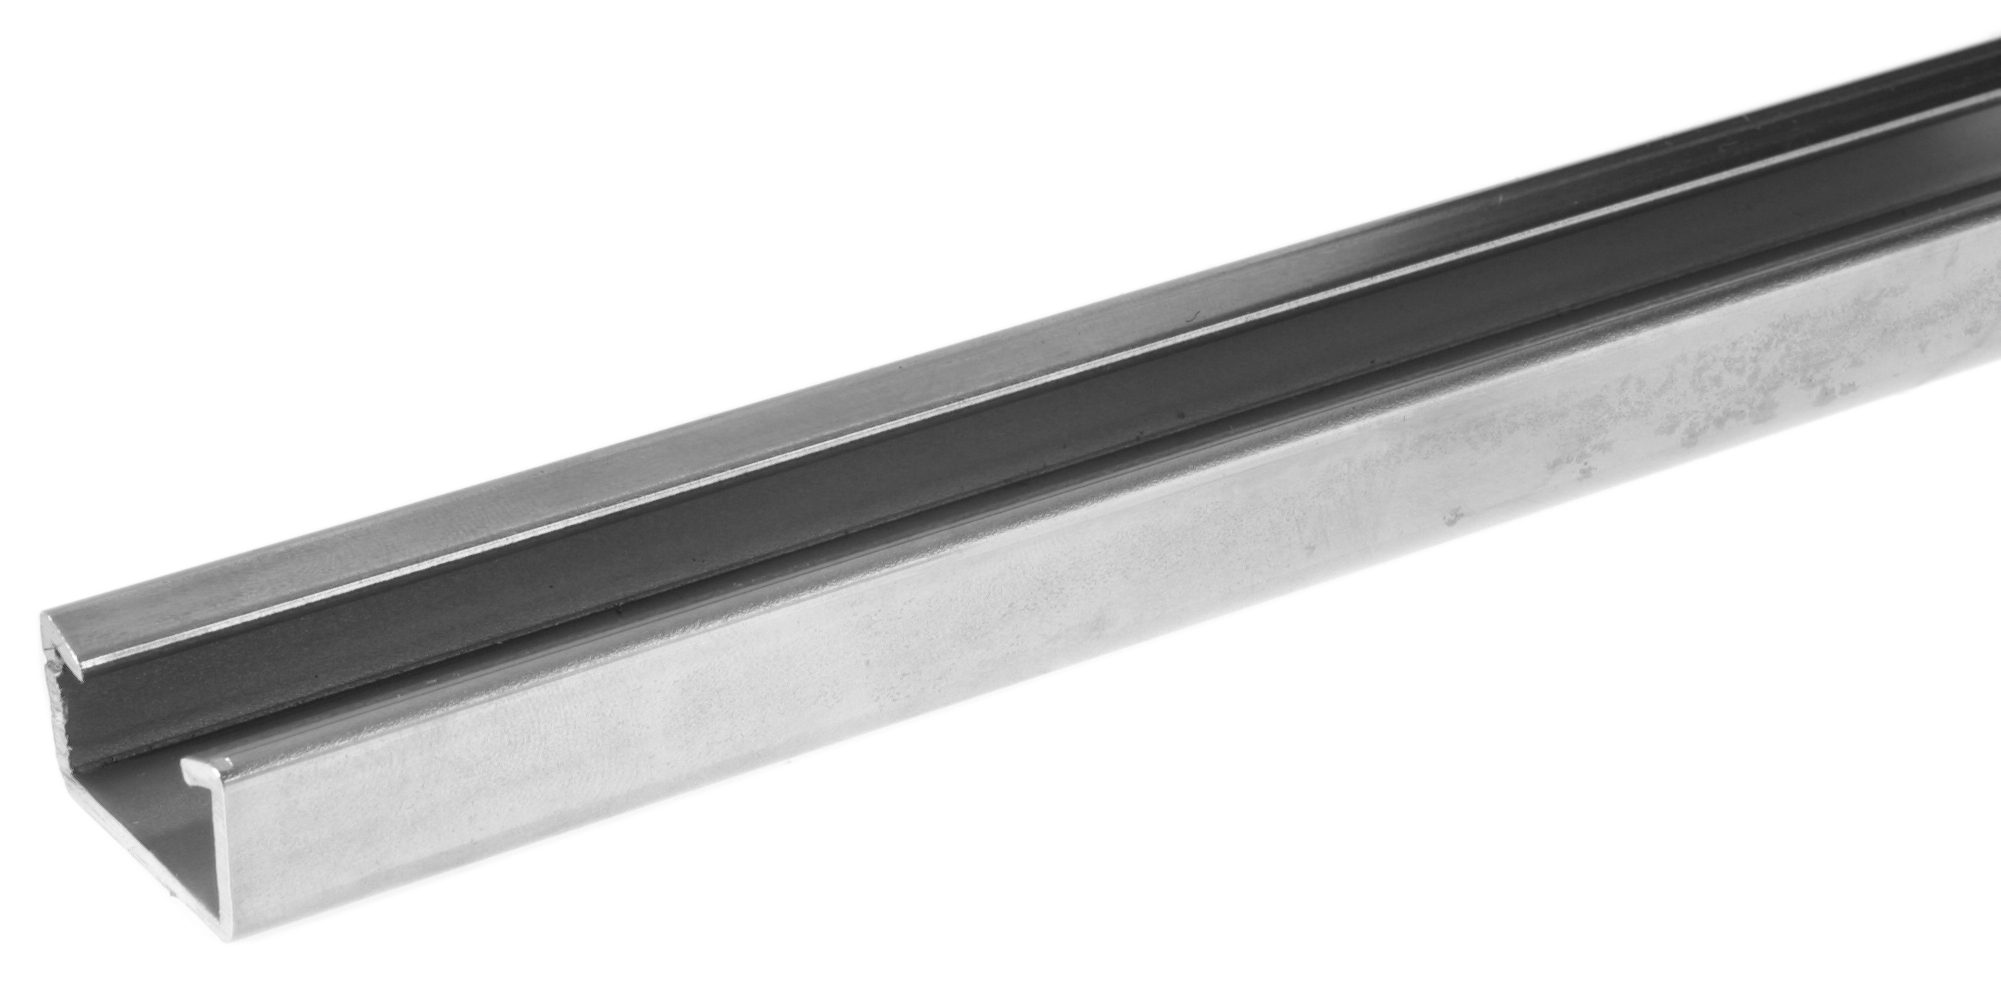 Aluminum alloy profile rail C30 3 m